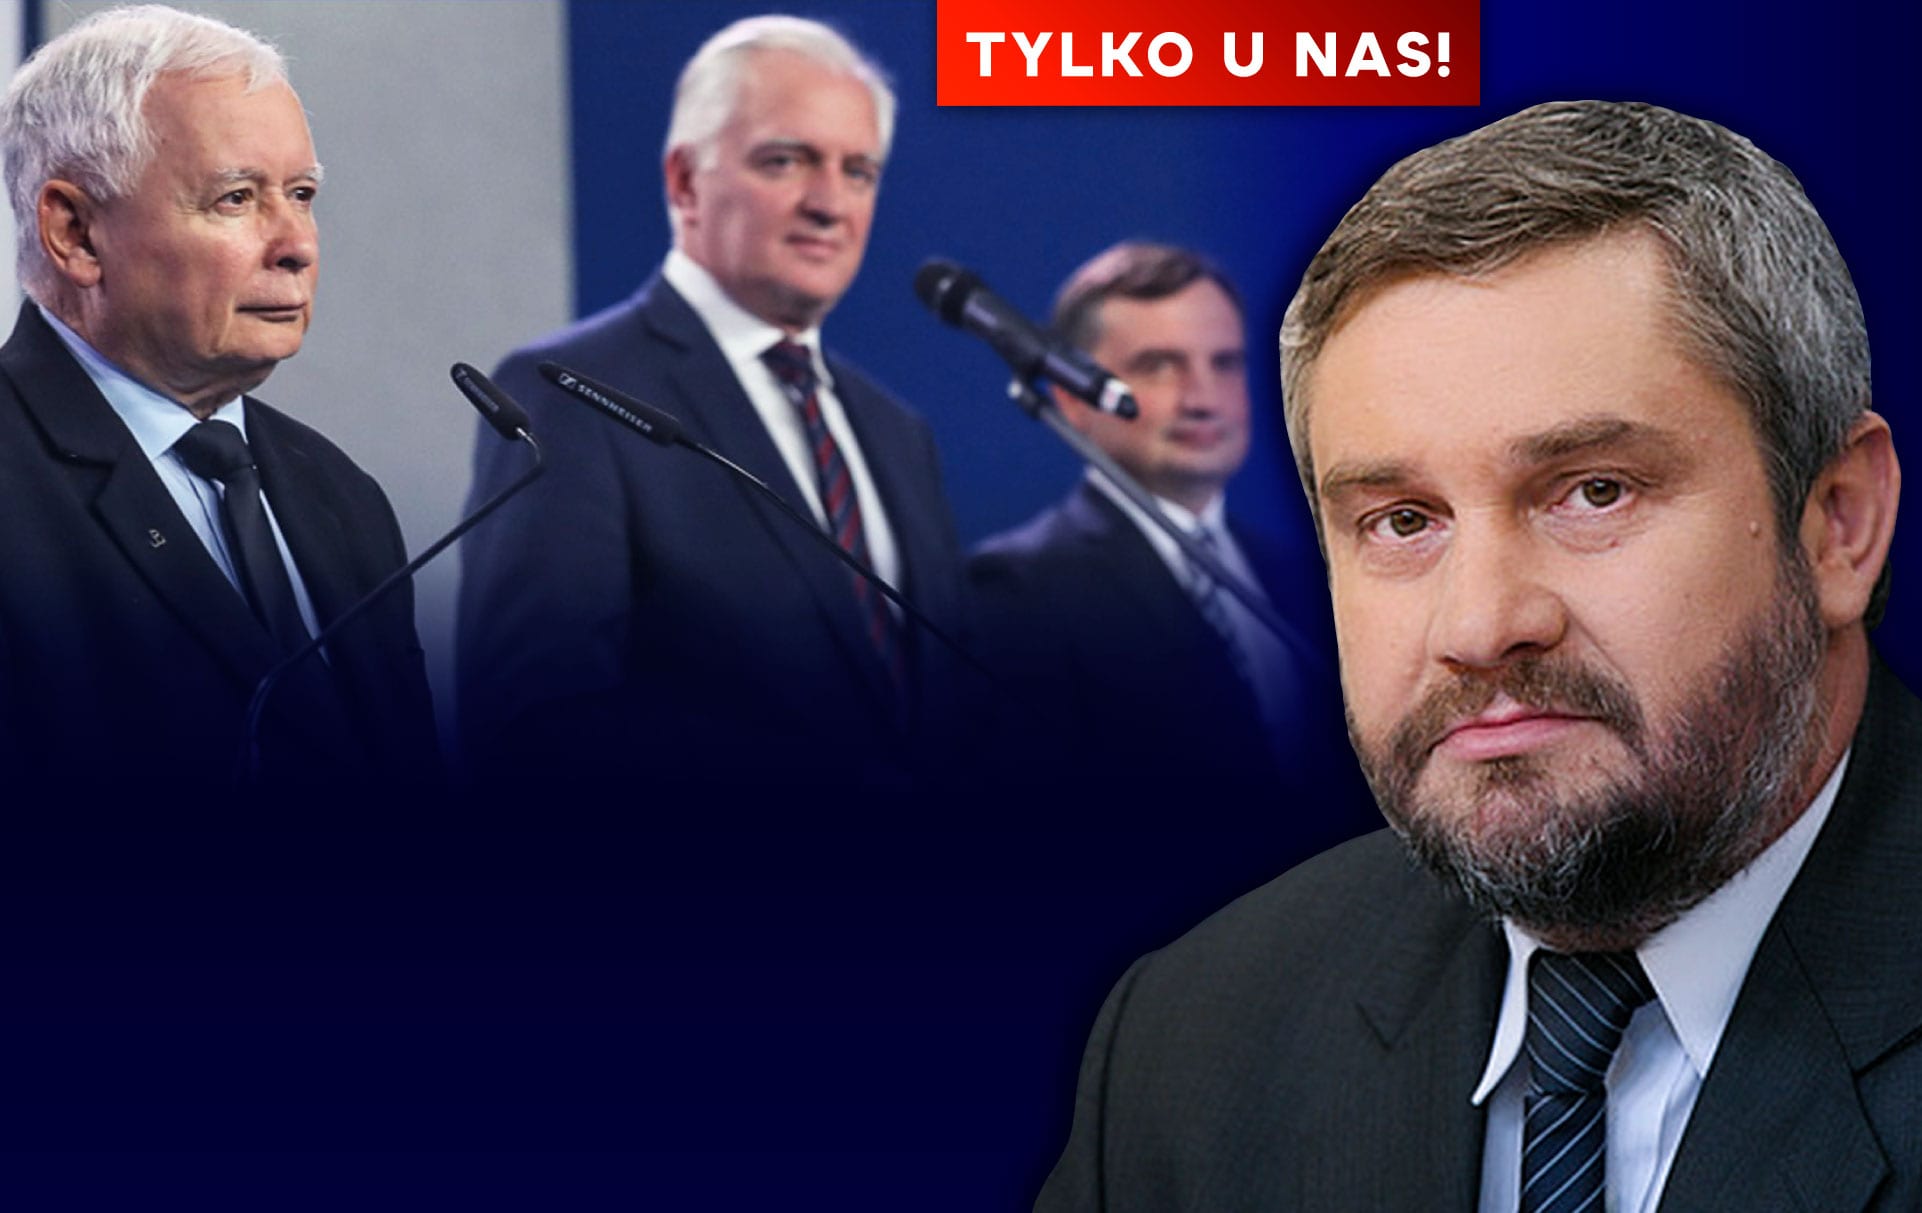 Minister rolnictwa Jan Ardanowski w IPP: Czy odejdę z PiS w razie DYMISJI?